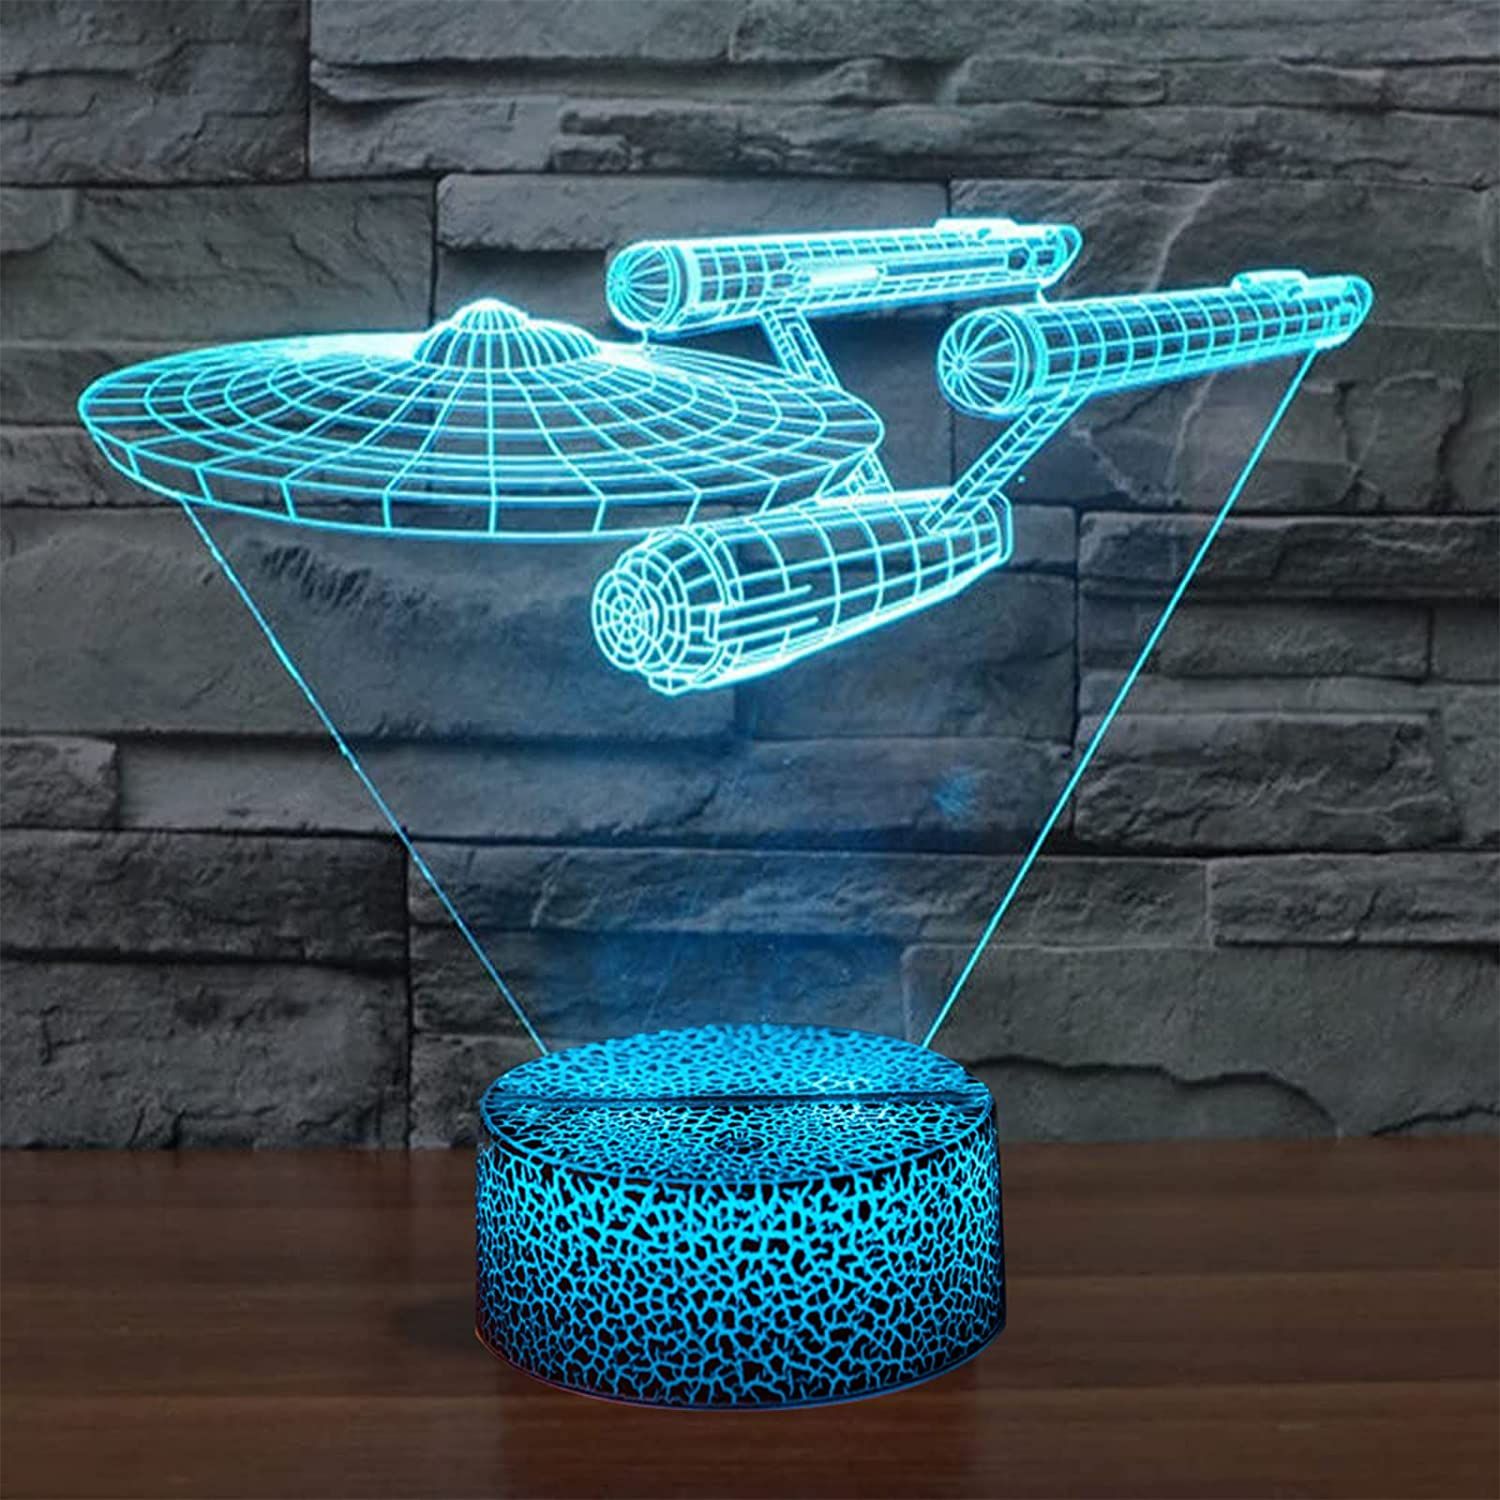 La luz nocturna 3D es uno de los mejores accesorios para los fans de Star Trek